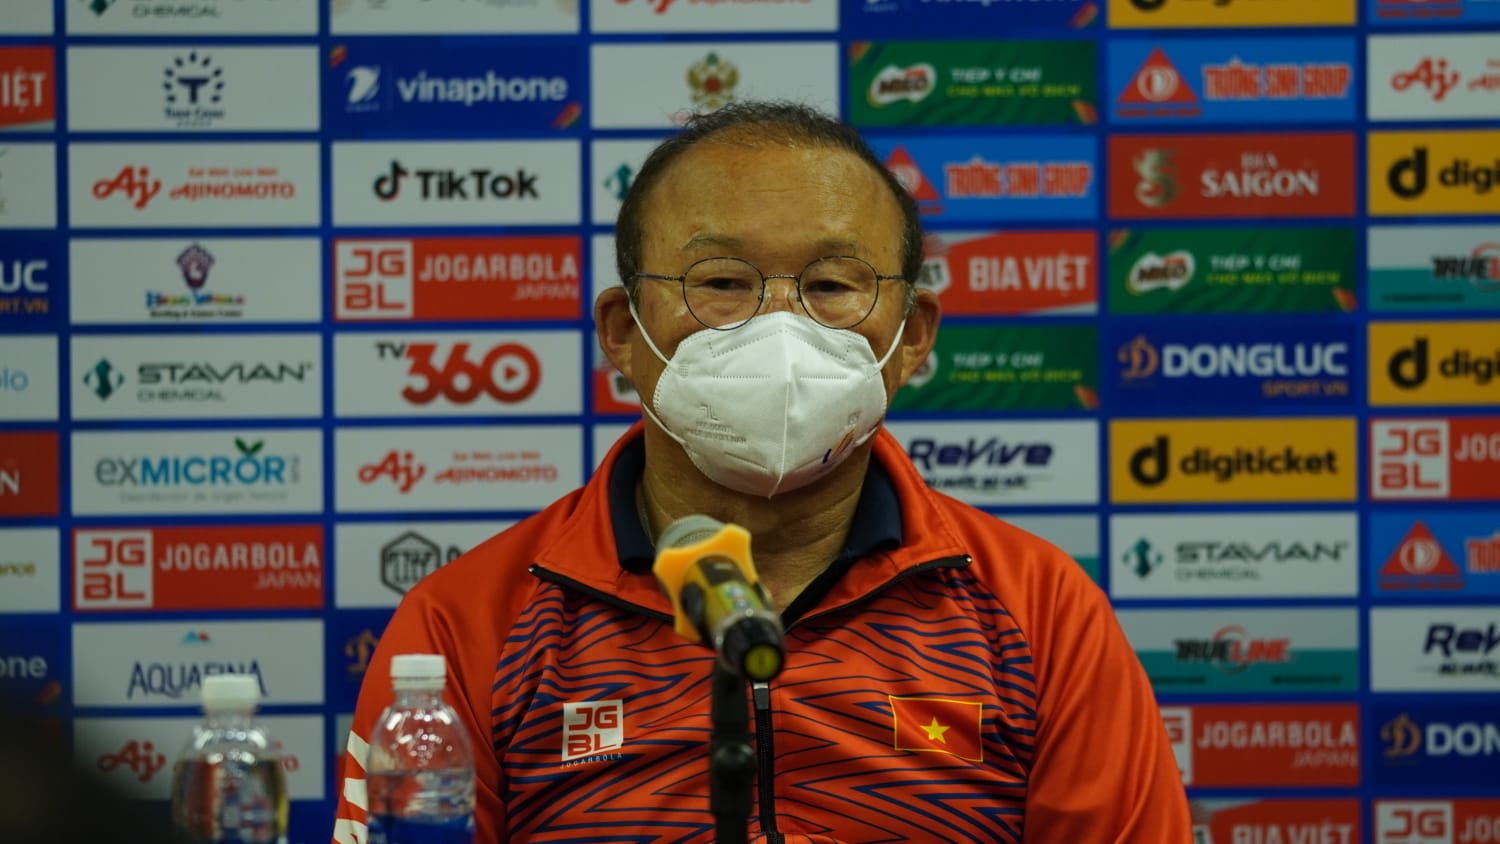 Piala AFF 2022: Pelatih Timnas Vietnam Komentari Kasus Pelemparan Bus Thailand di Indonesia